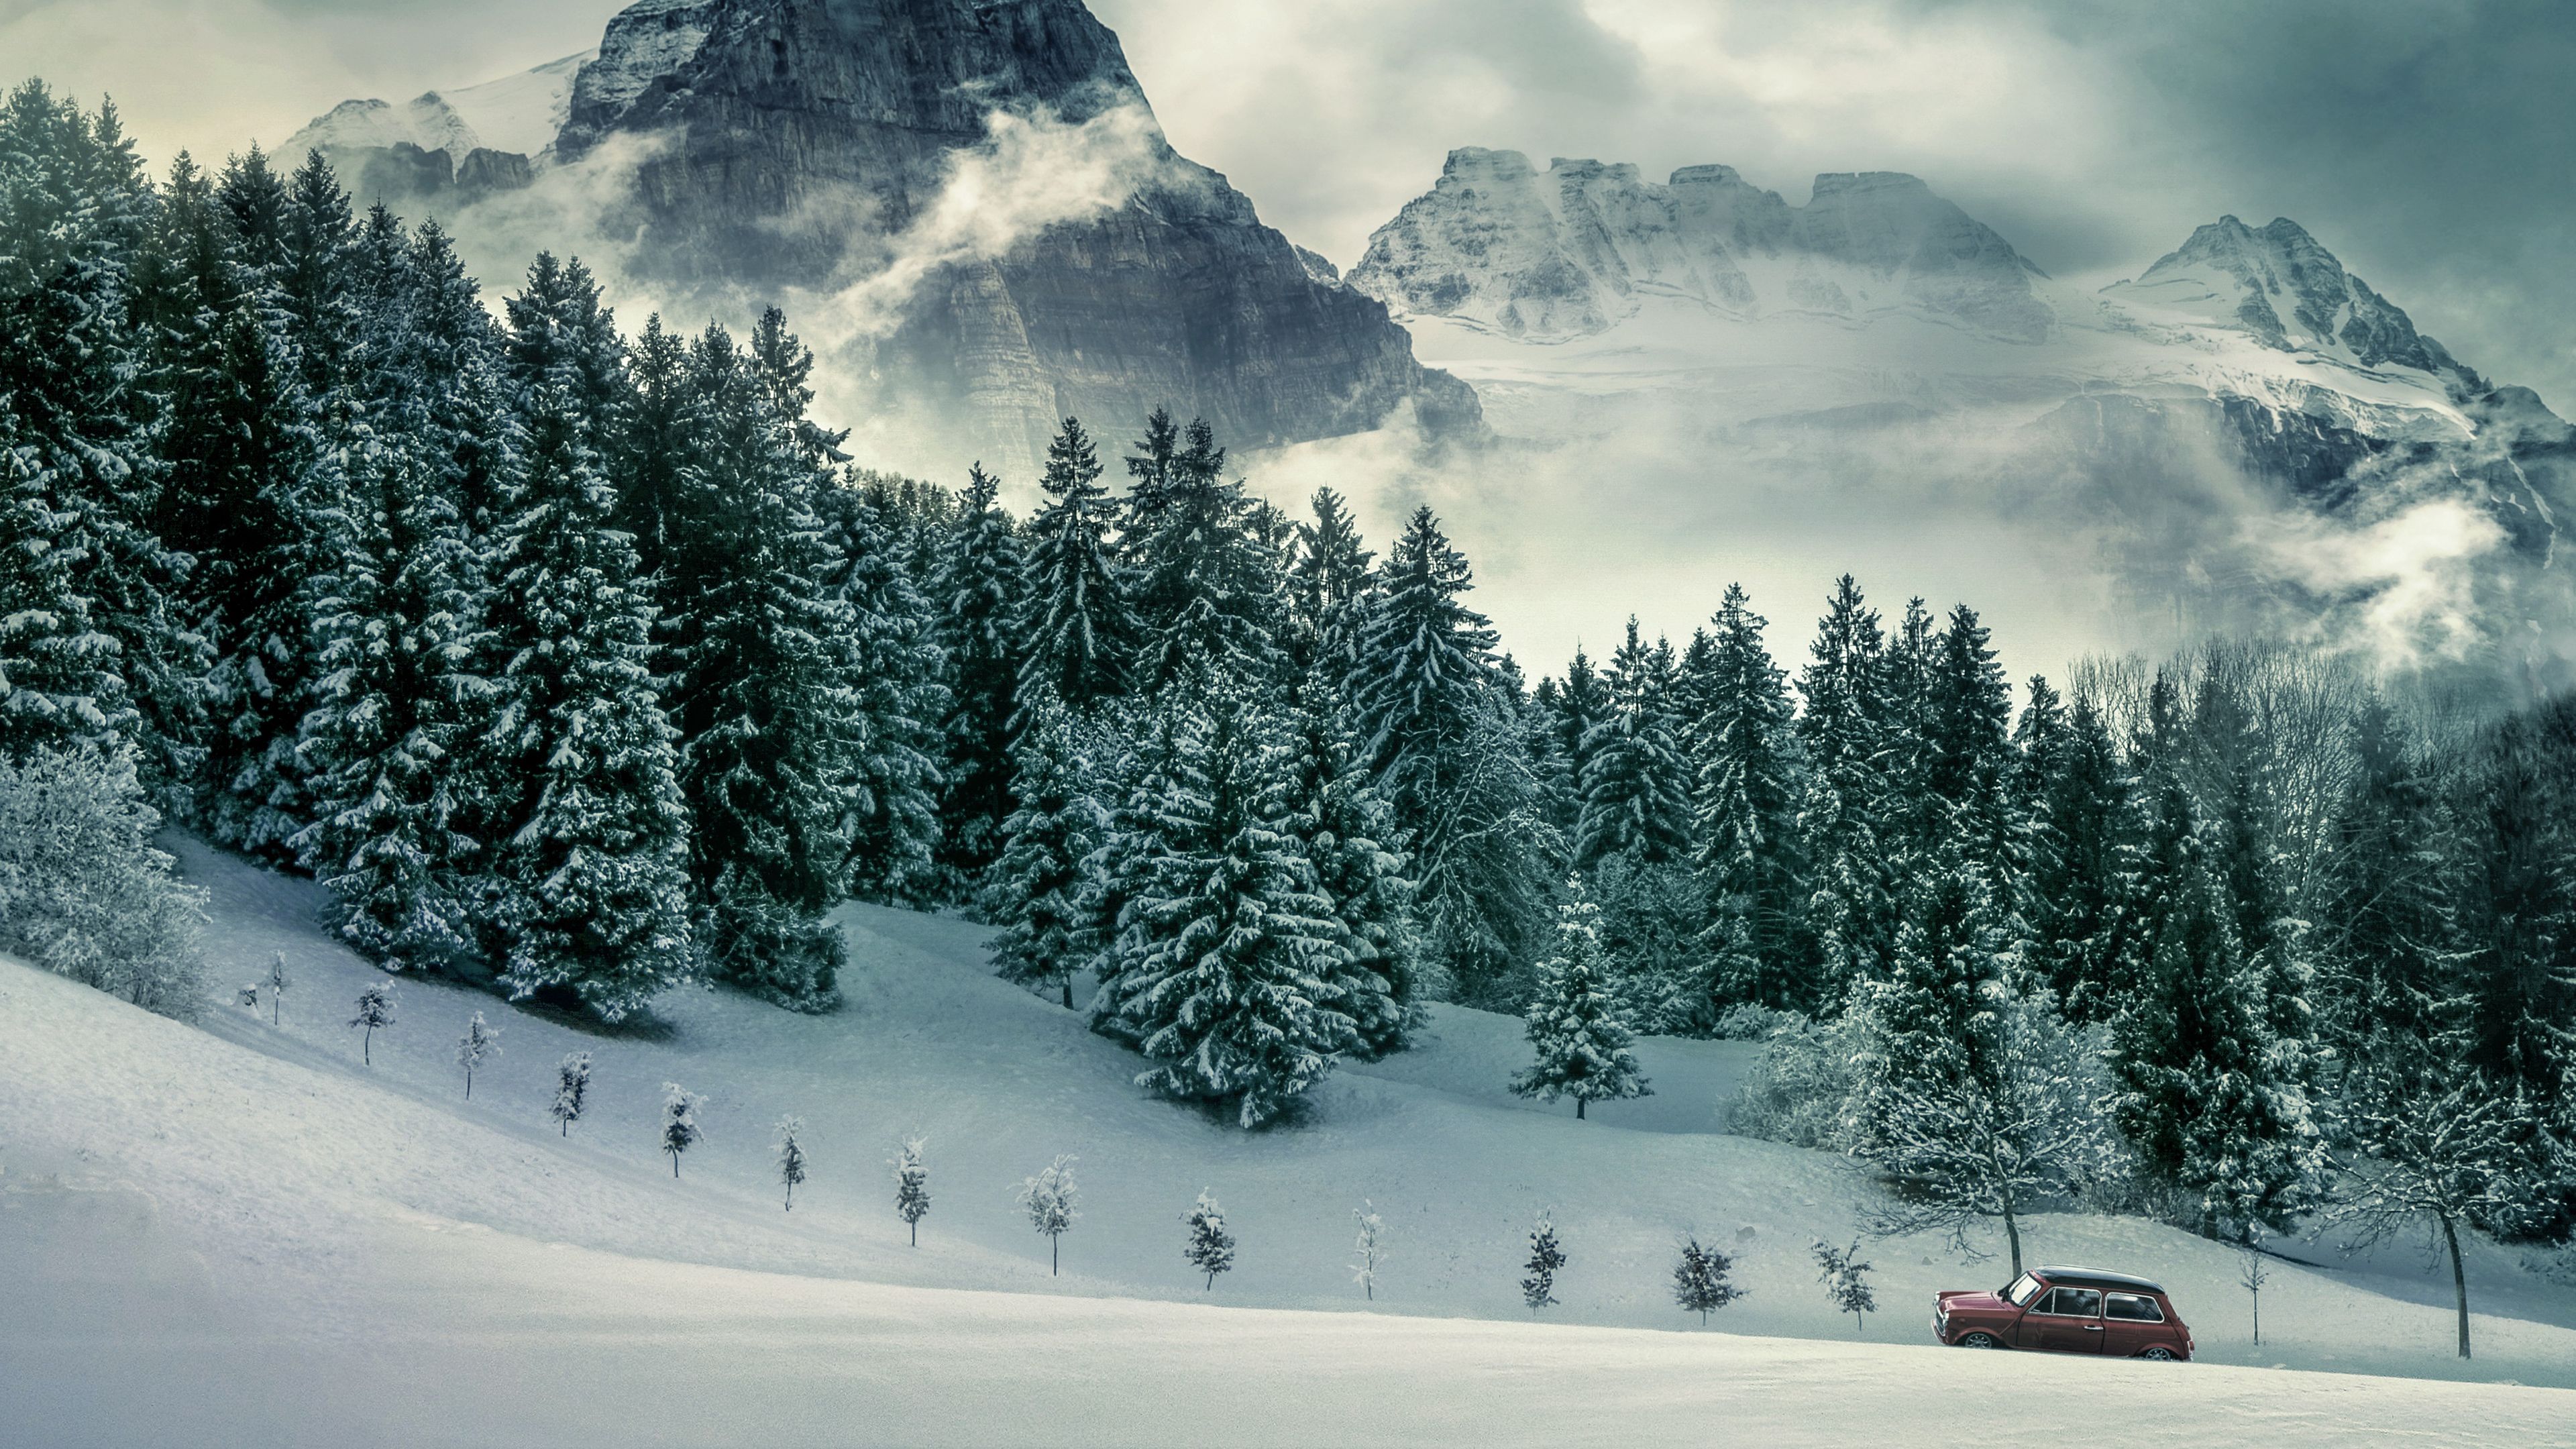 Forest, Mountains, Pine trees, Winter, Peak, 4k Free deskk wallpaper, Ultra HD